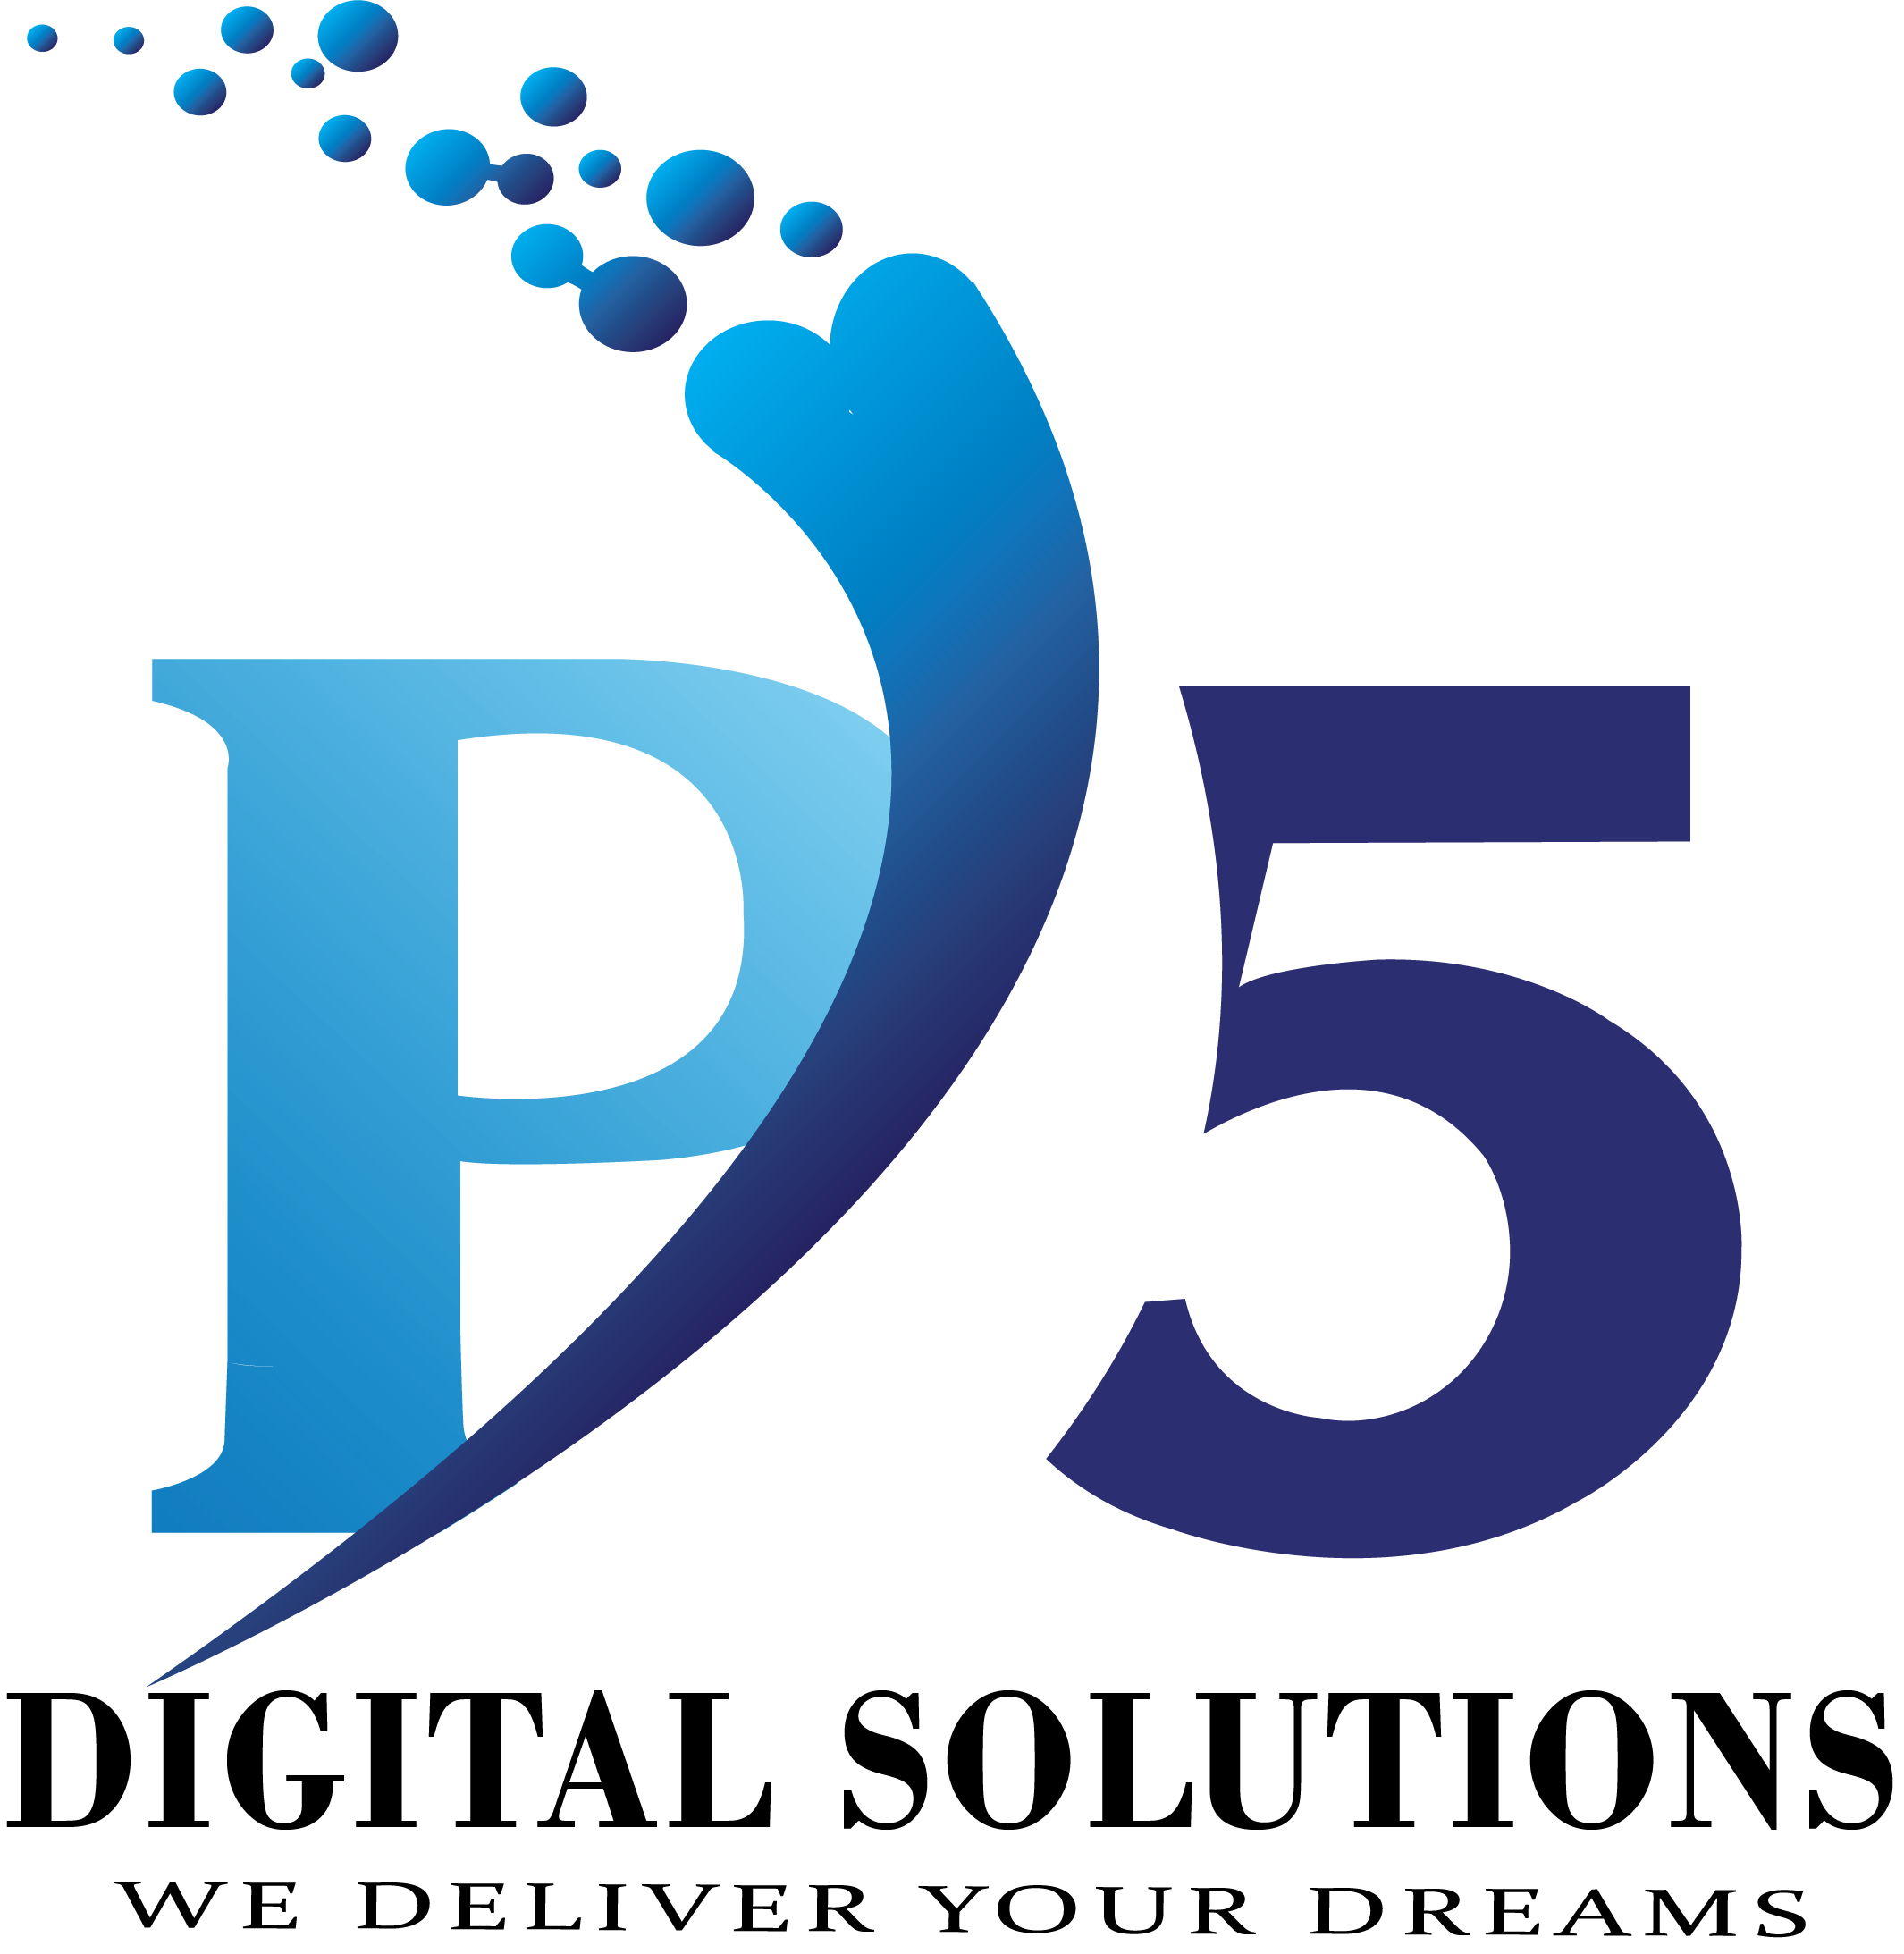 P5 digital solutions logo